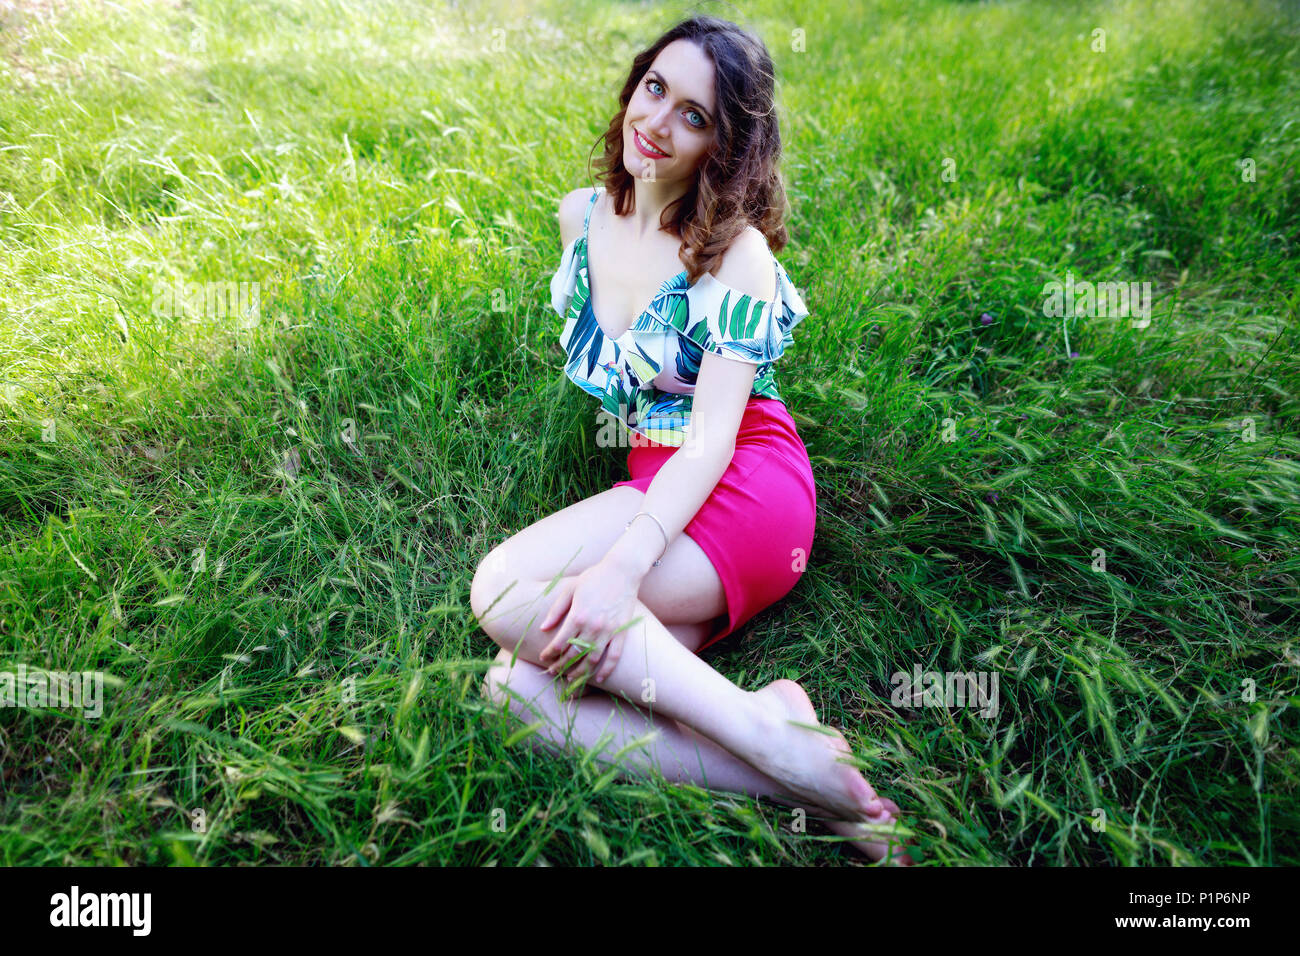 Schöne brünette Mädchen in das grüne Gras des Parks liegen, sieht in die Kamera und lächelt. Stockfoto